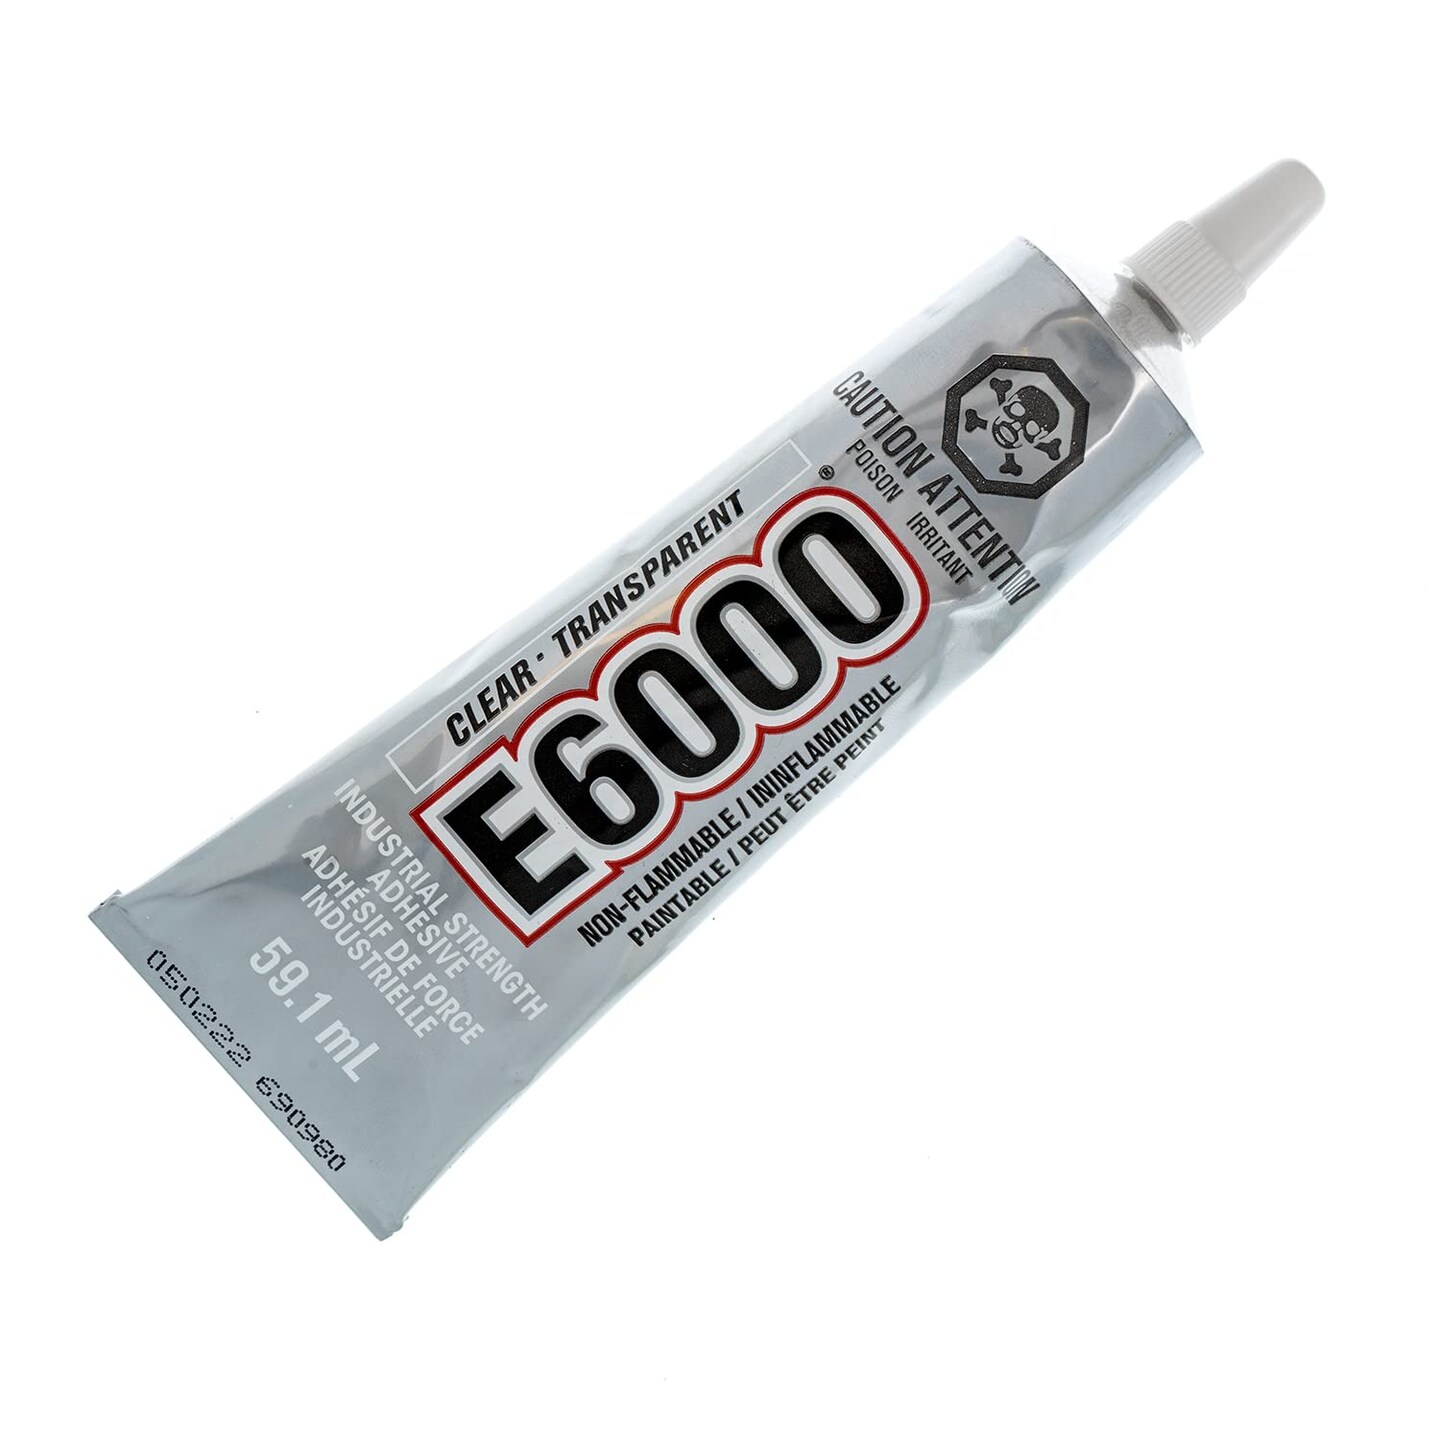 E6000 Permanent Clear Multi Purpose Adhesive, 59ml